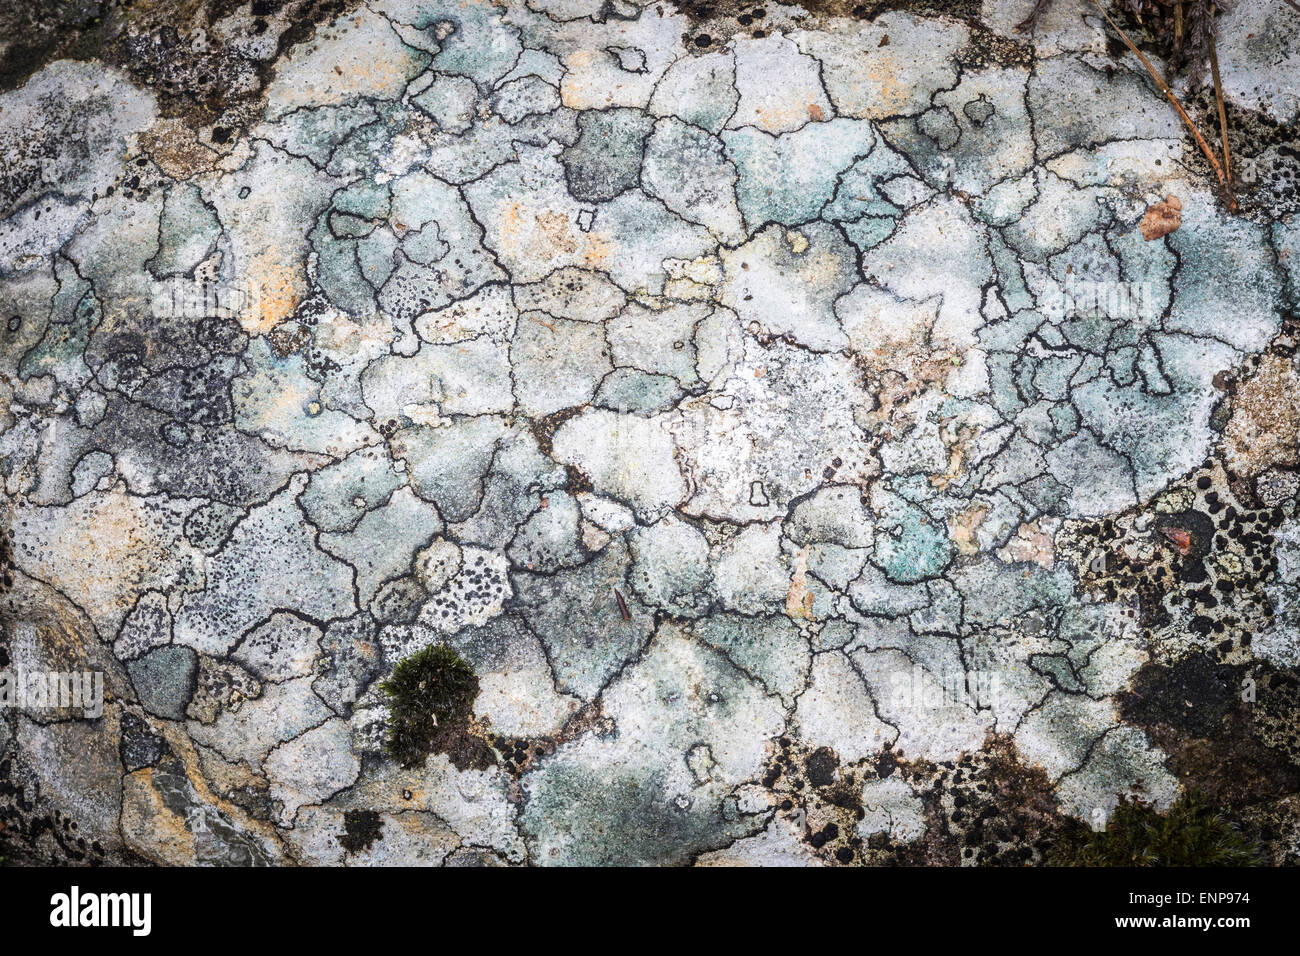 Lichen on Rock at Glen Feshie in Scotland. Stock Photo